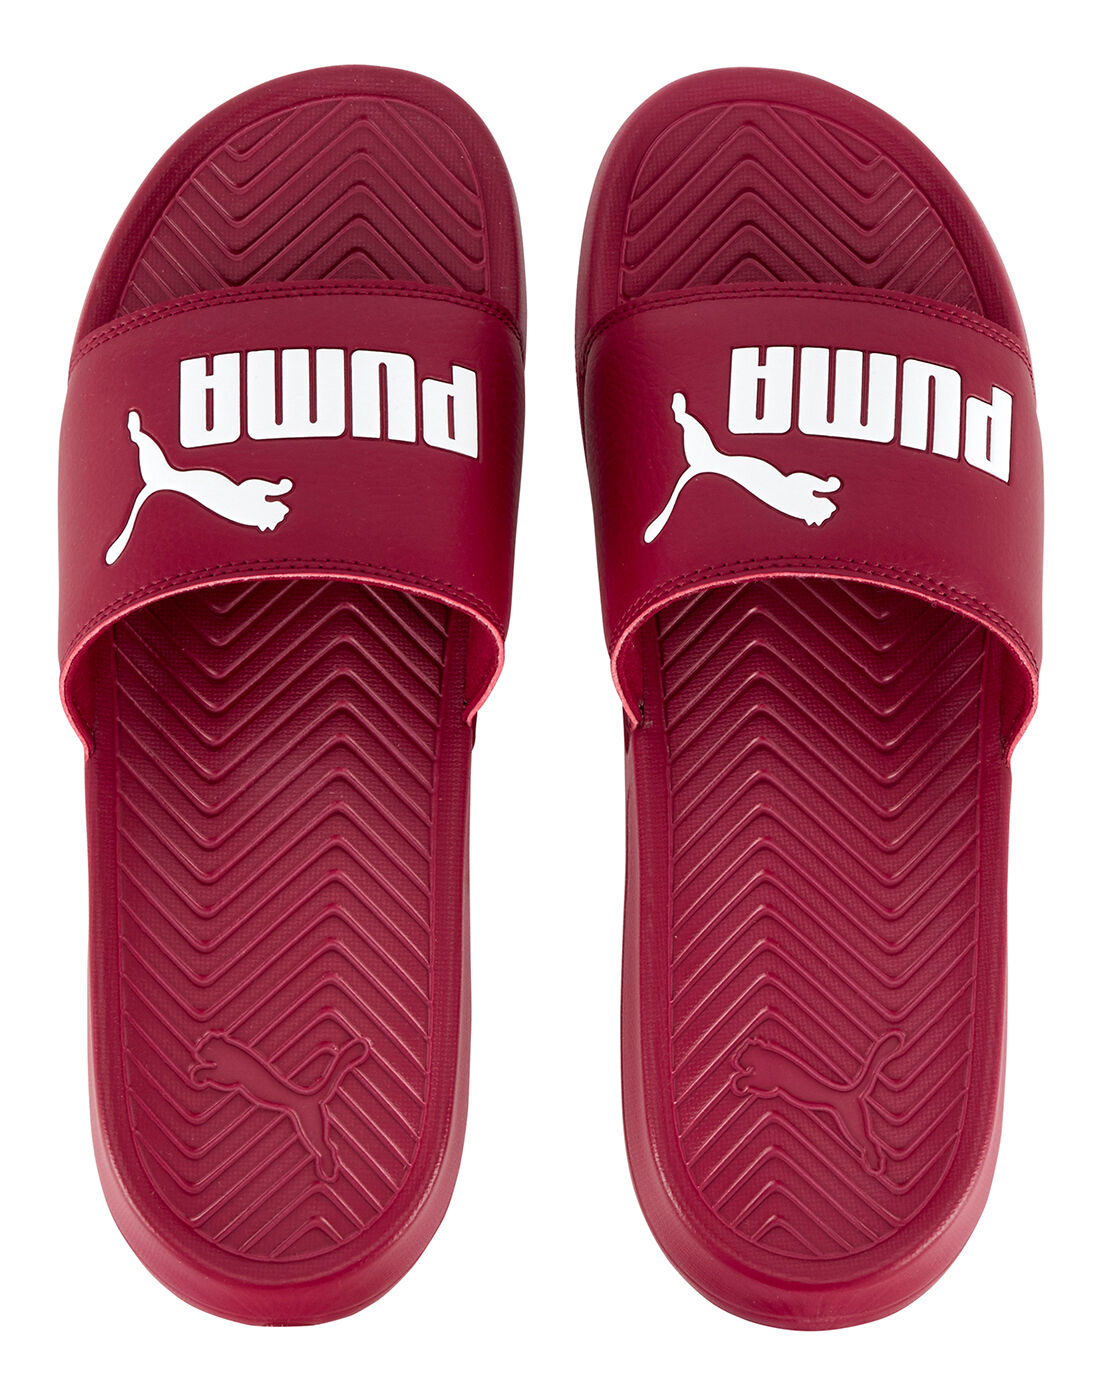 burgundy puma slides